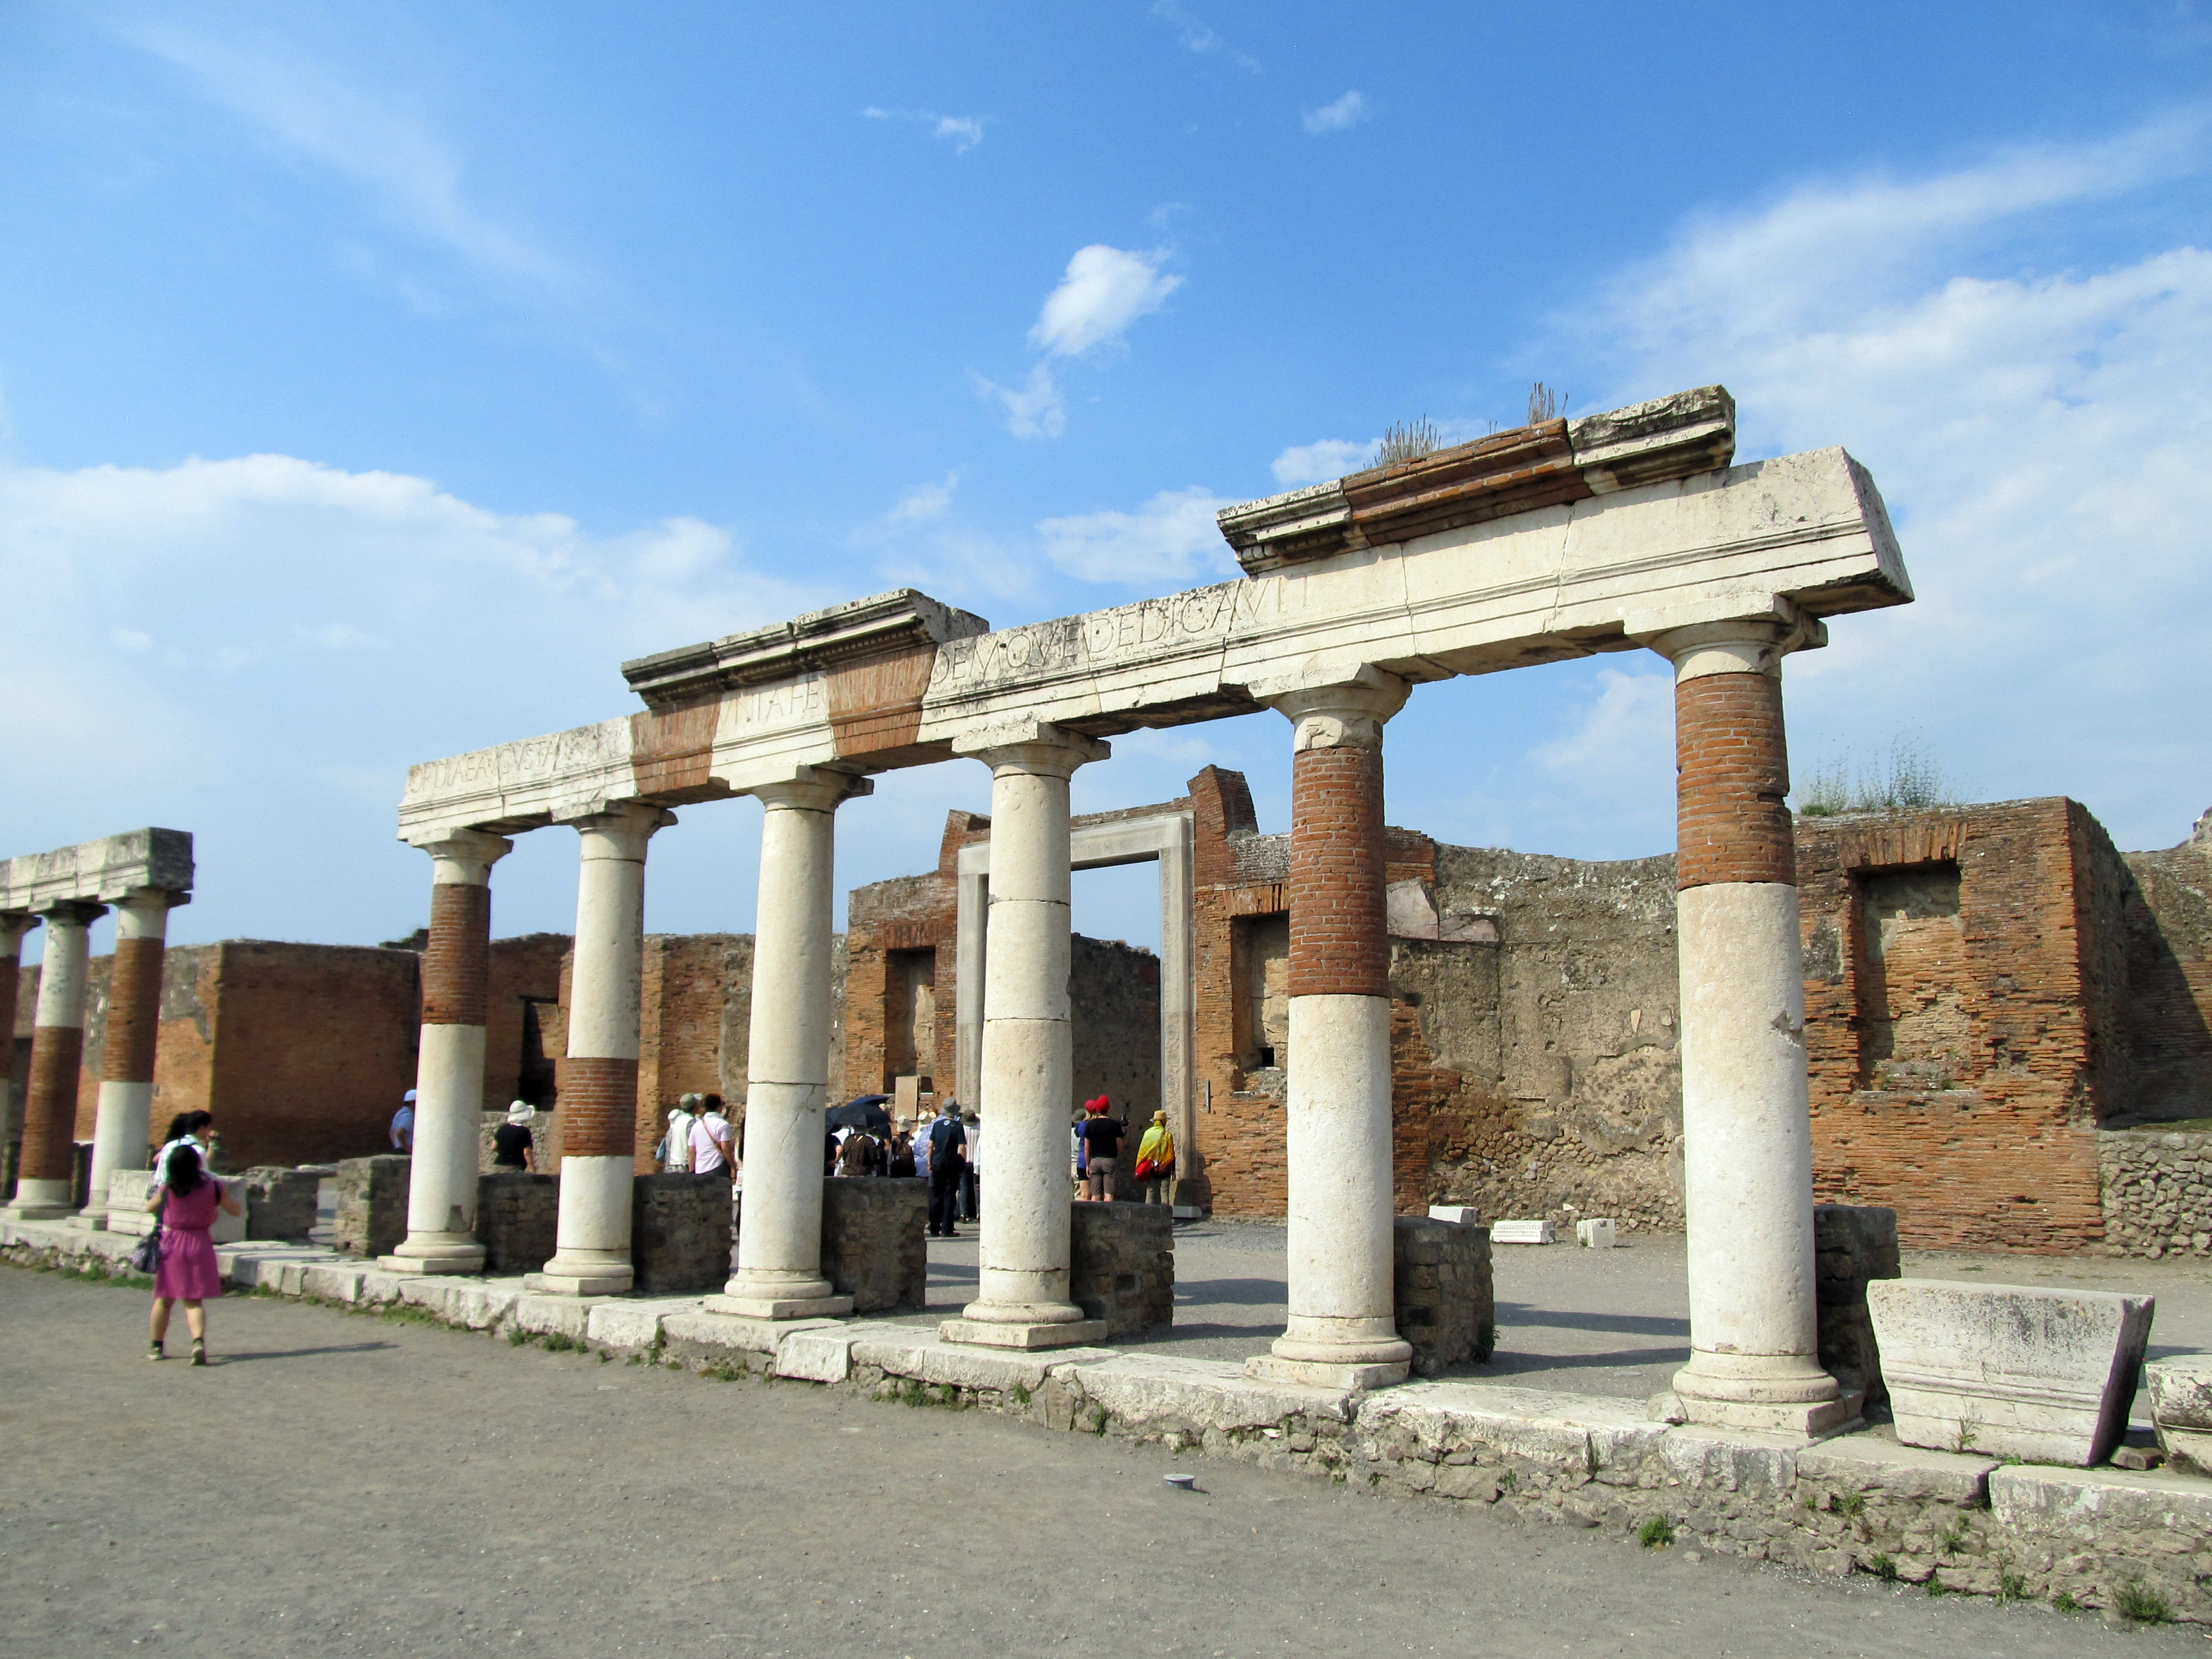 The Eumachia Building in Pompeii